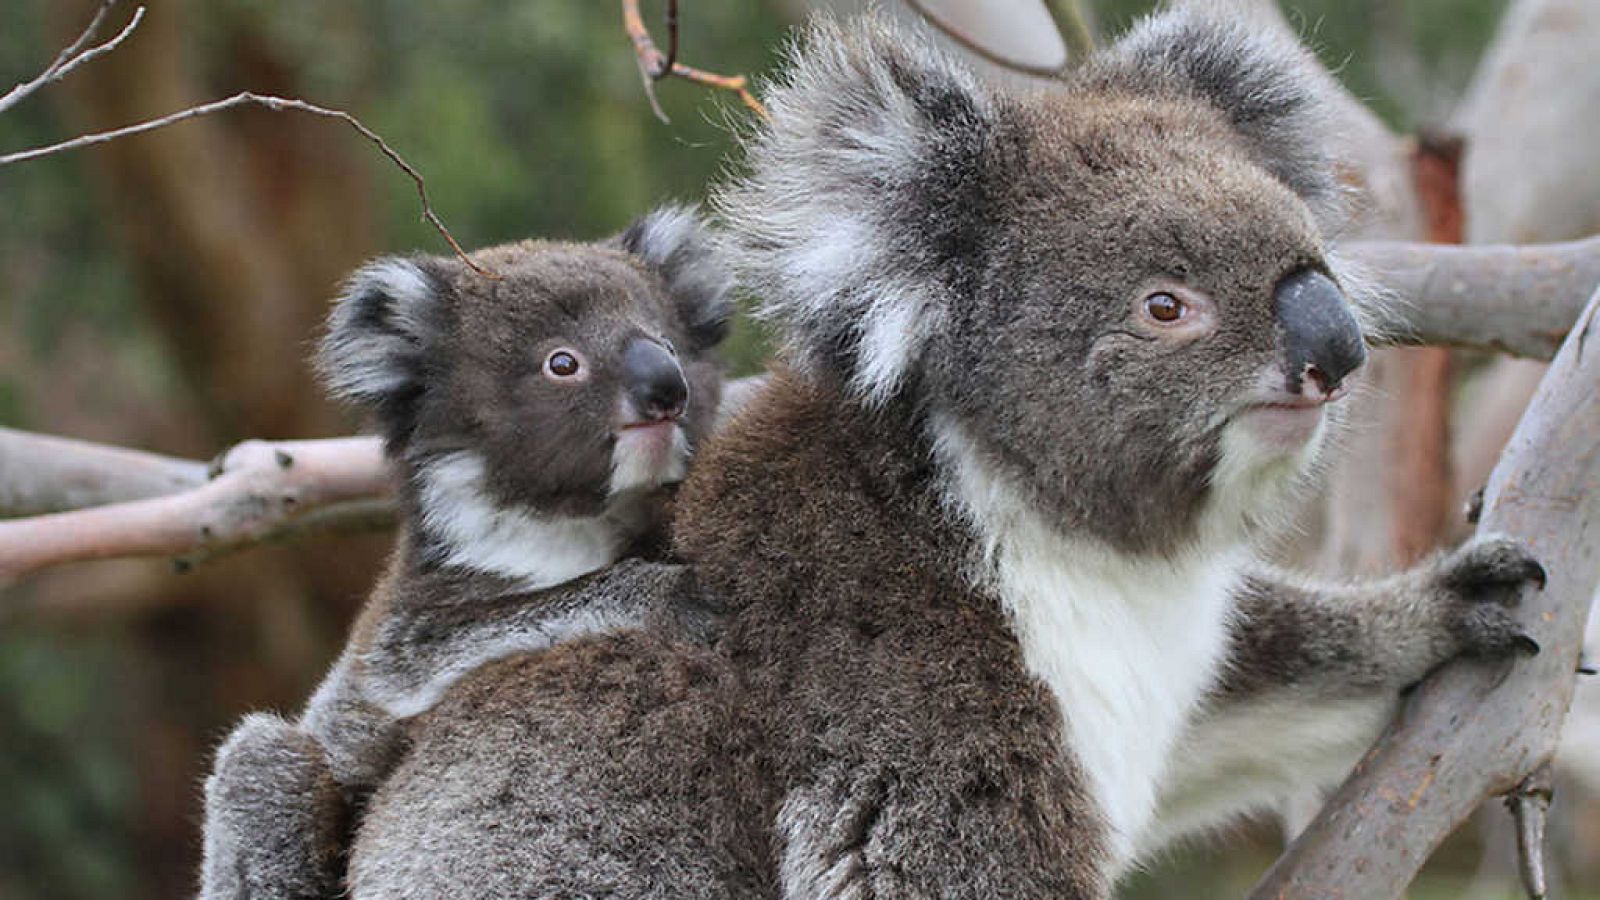 Grandes documentales - La vida secreta de los koalas: El país de los koalas